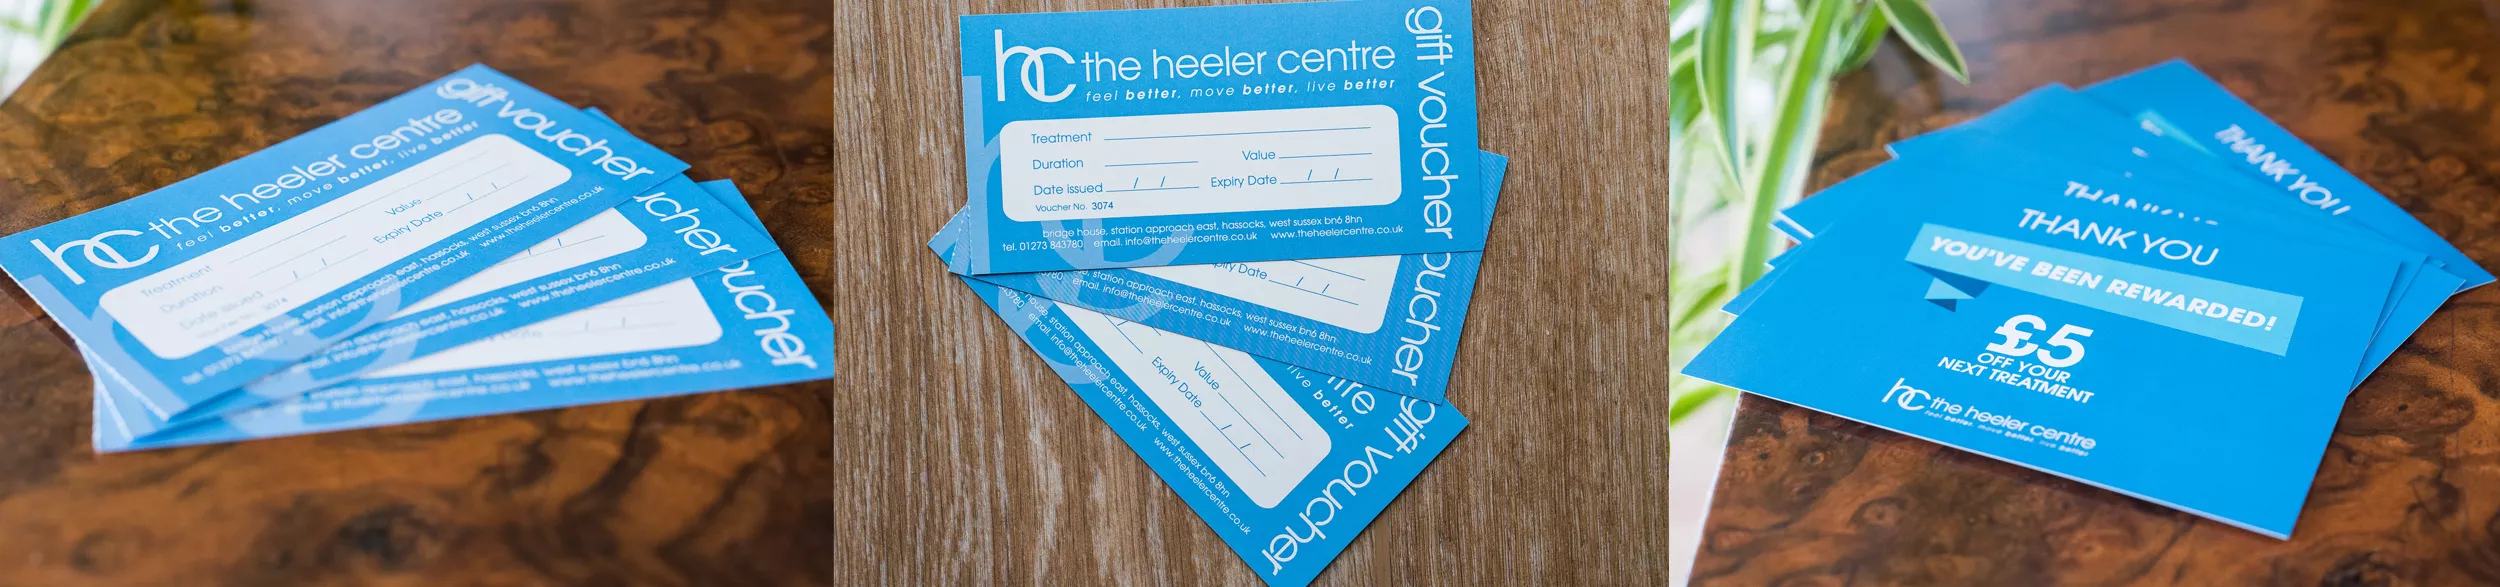 The Heeler Centre gift vouchers